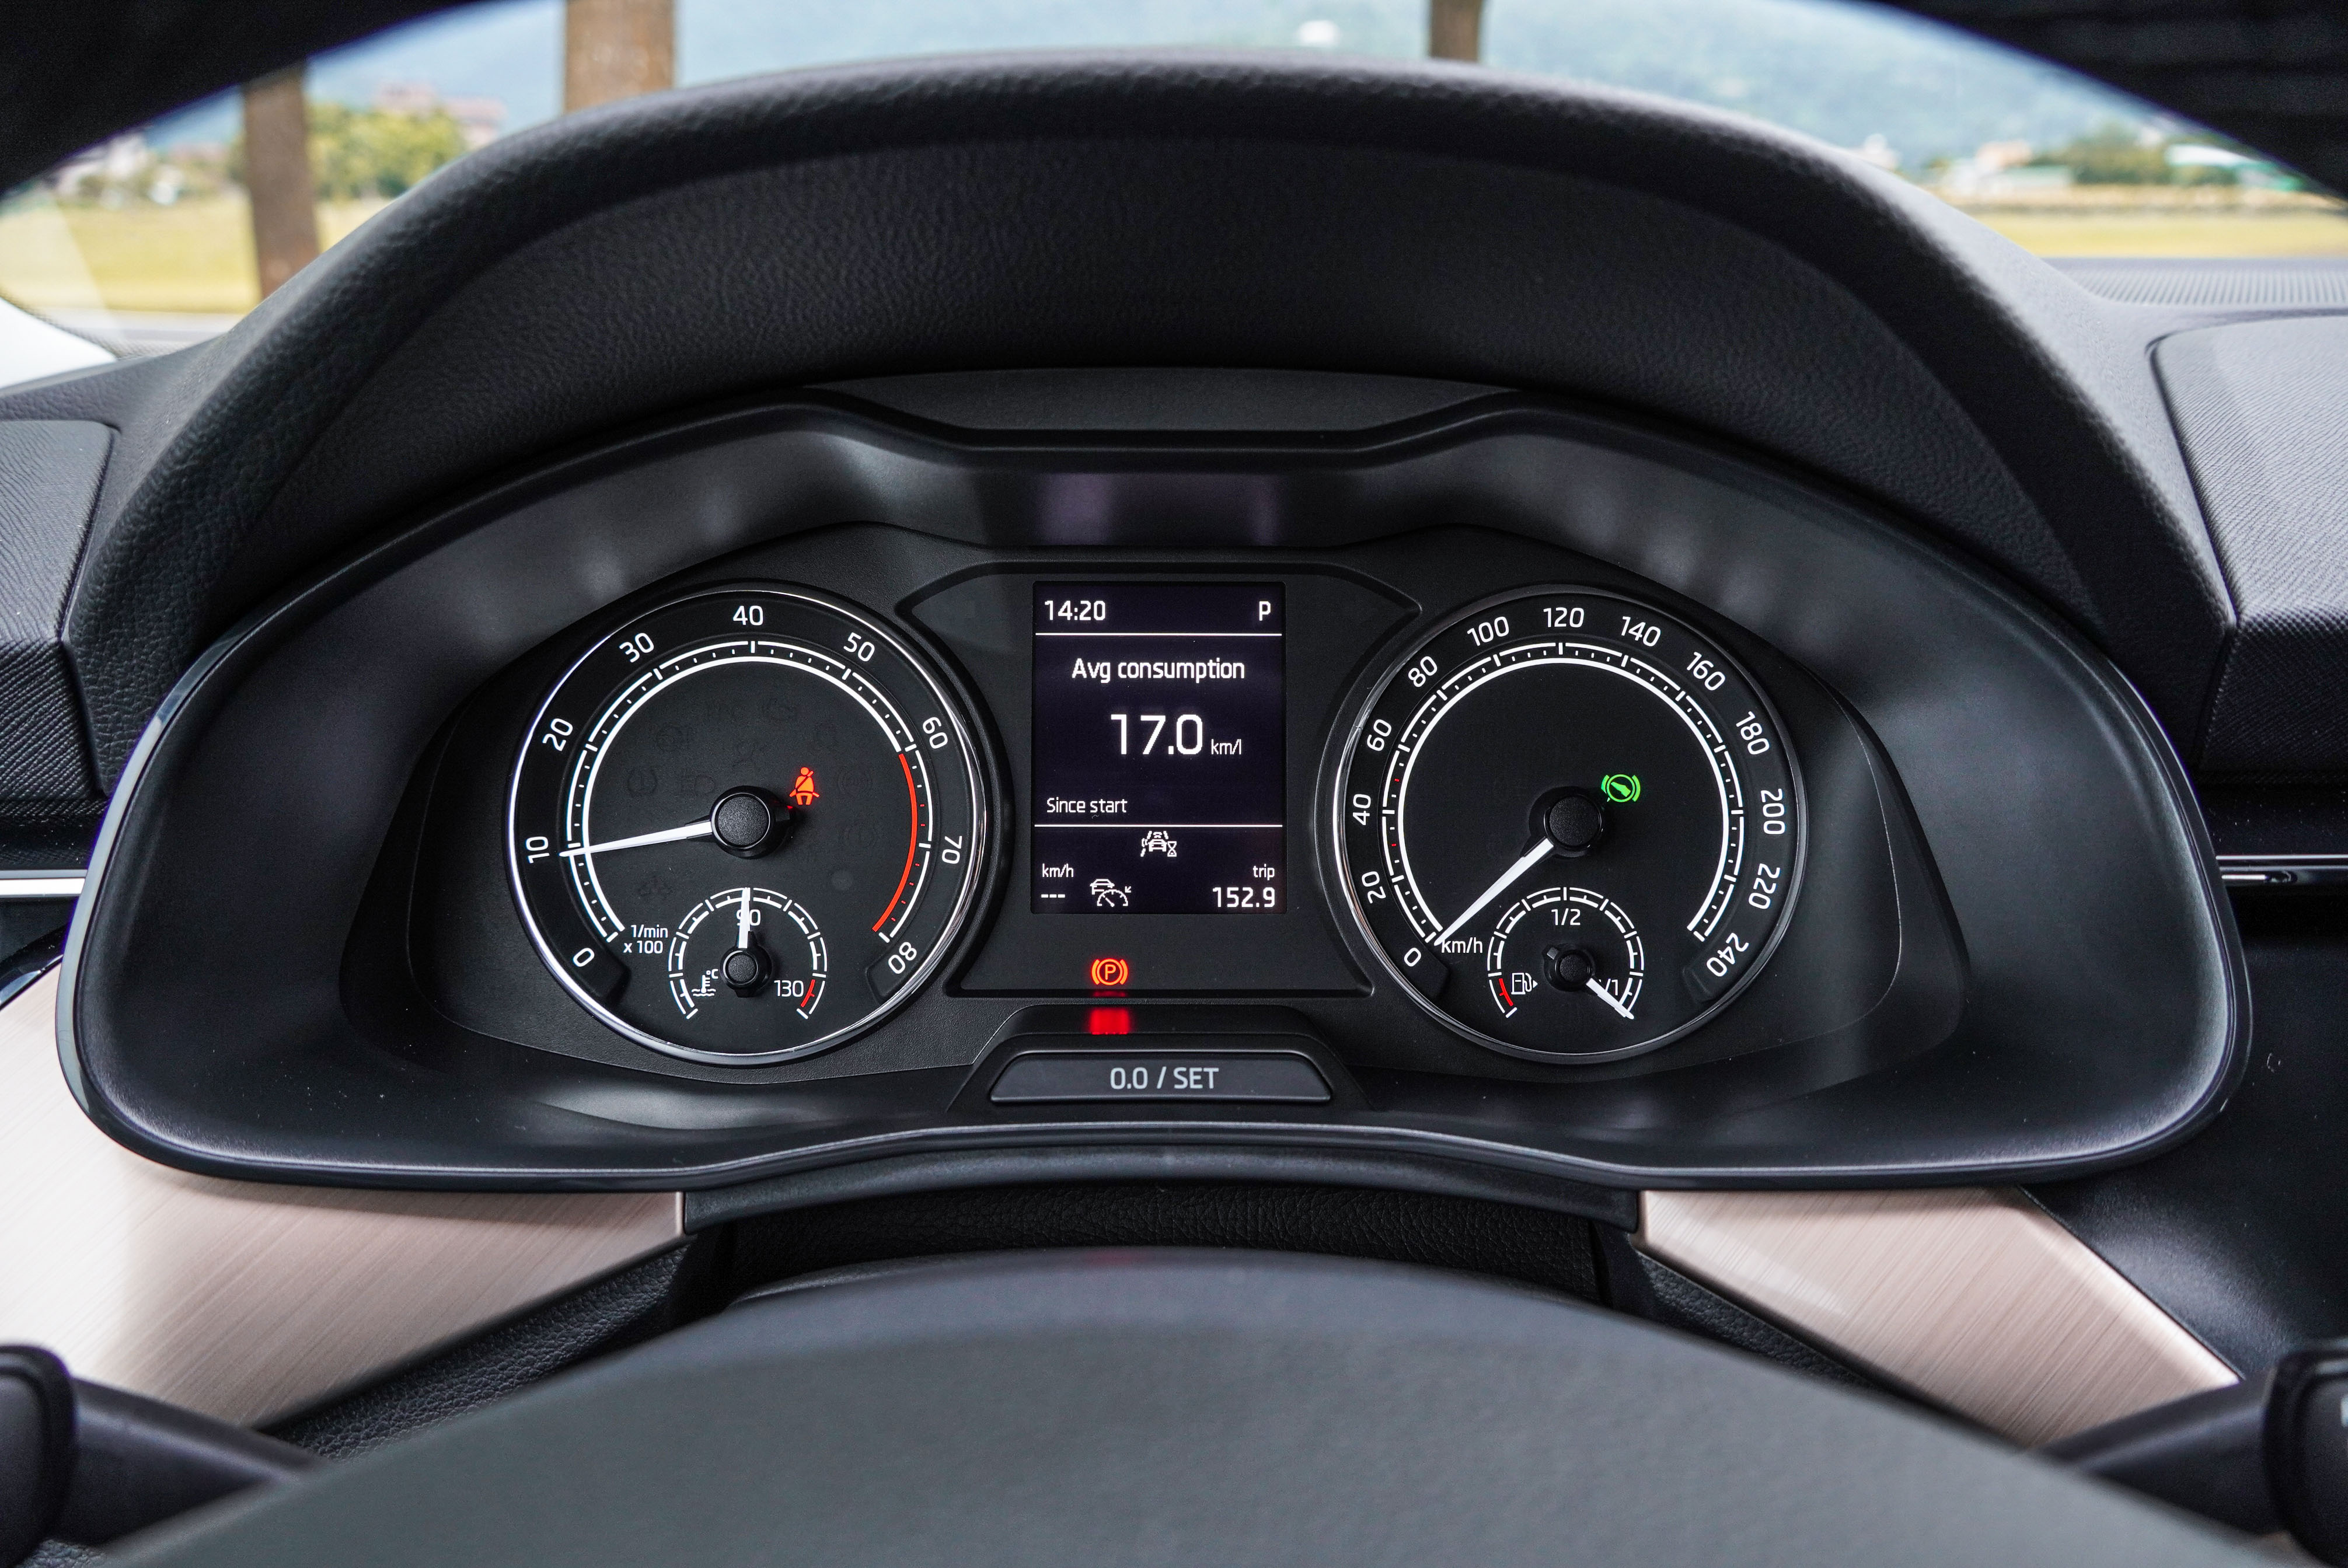 傳統指針儀表中央資訊幕可顯示油耗，也能夠顯示跟車系統圖資，另可加 30,000 元選配數位儀表。